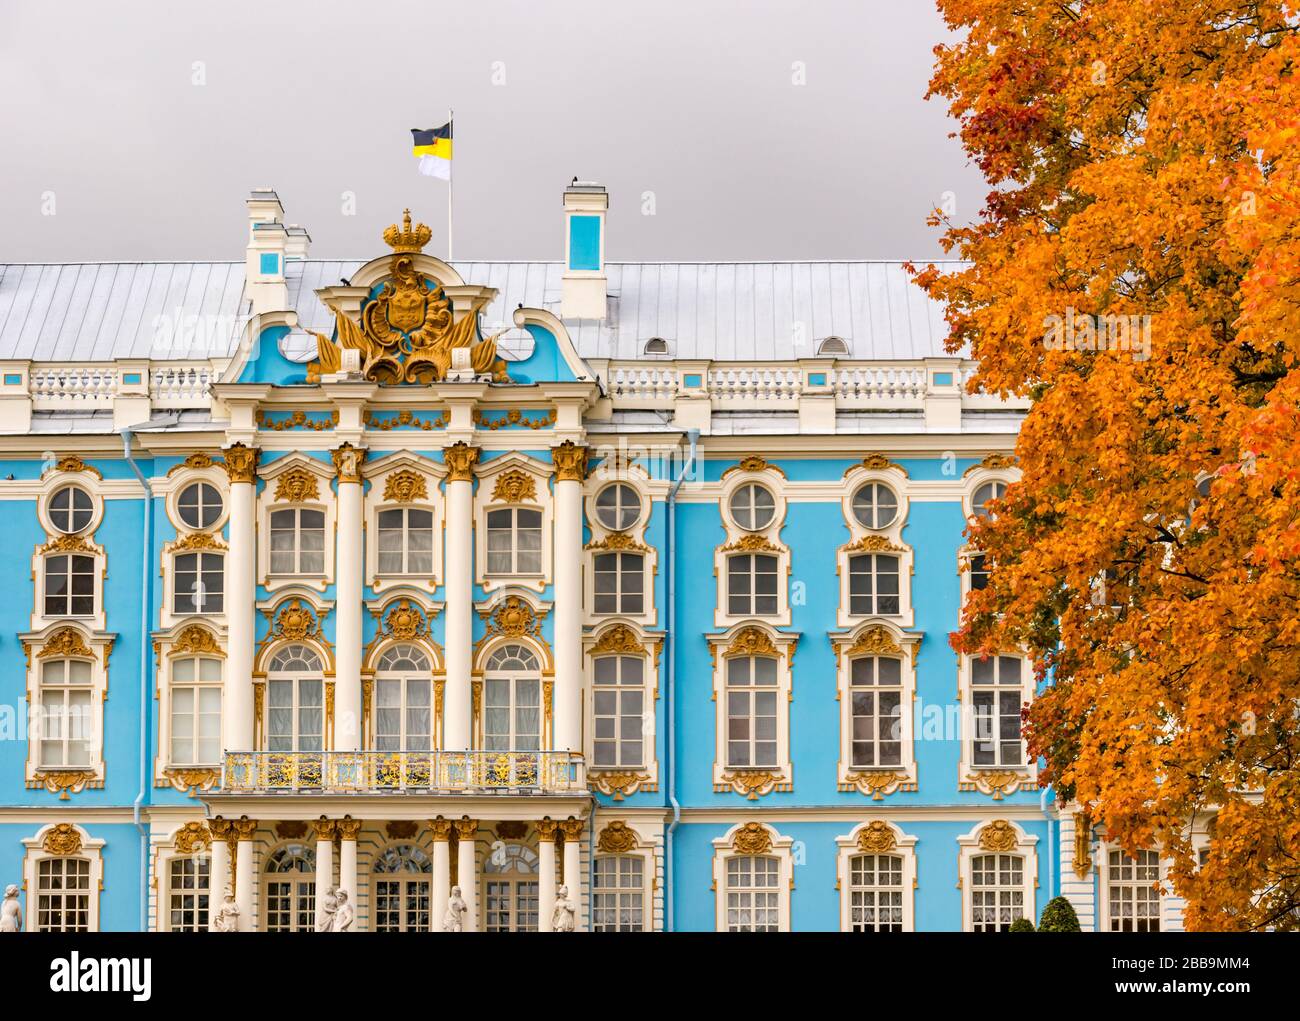 Catherine Palace Grand barocco rococò facciata con alberi d'autunno, Tsarars Village, Tsarskoe Selo, Pushkin, Federazione russa Foto Stock